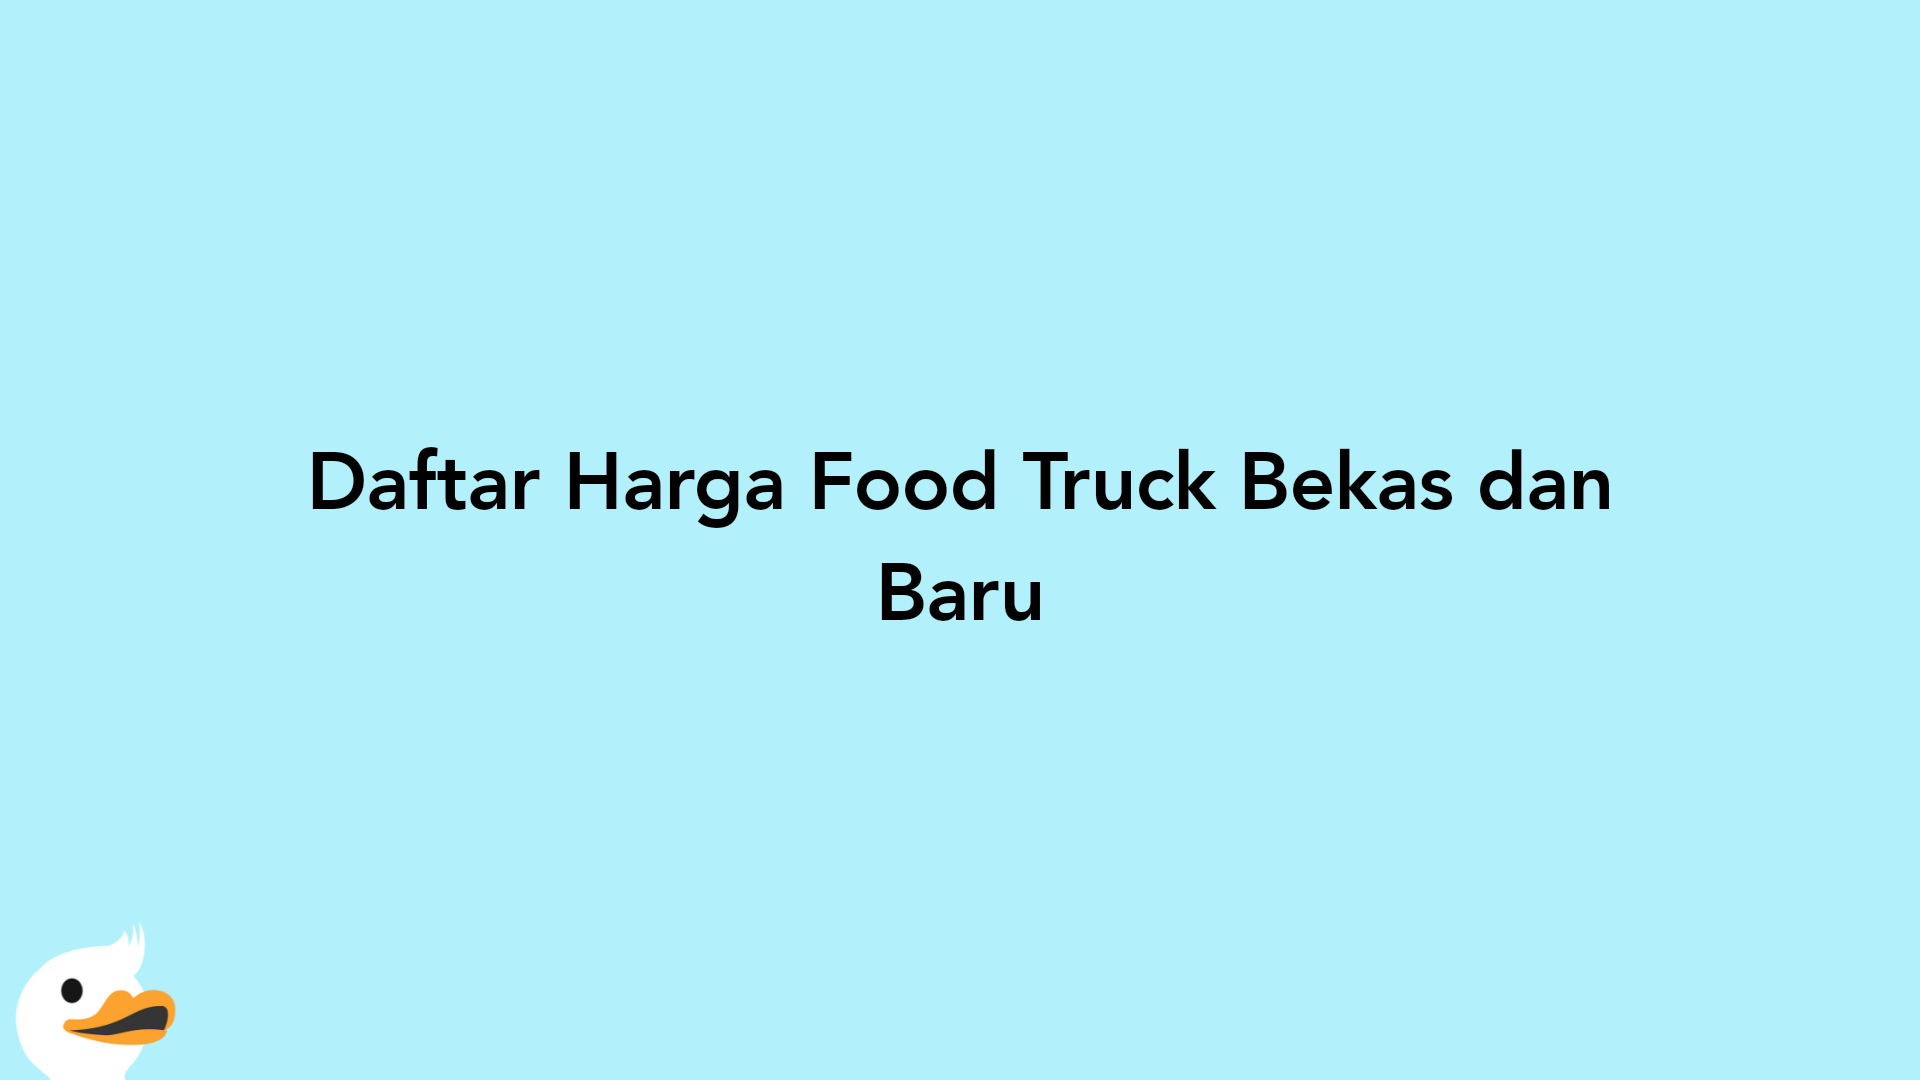 Daftar Harga Food Truck Bekas dan Baru